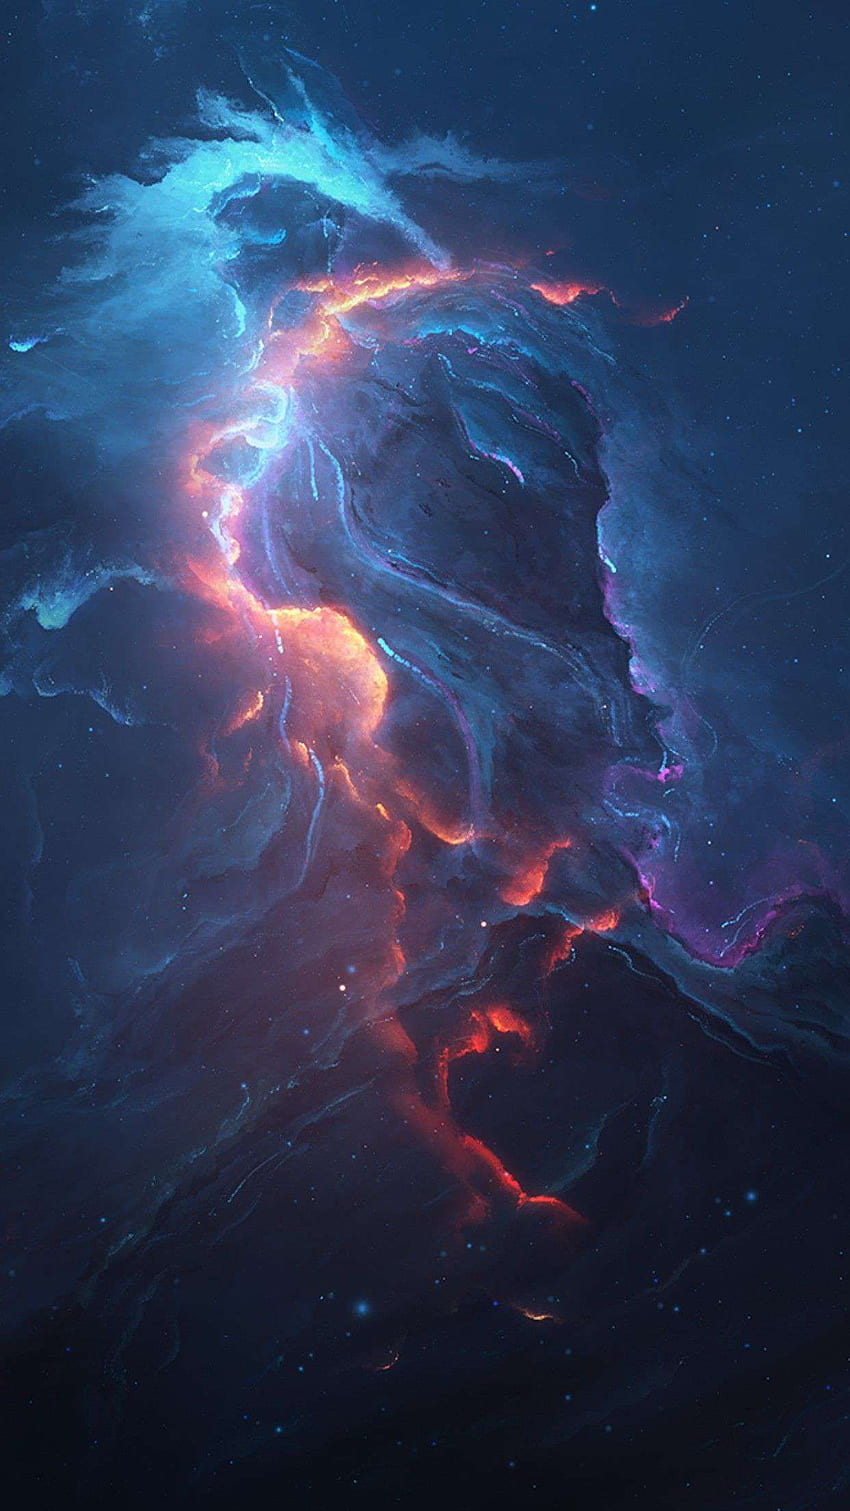 Space nebula iPhone HD wallpapers: Những bức hình nền HD về vũ trụ và thiên nhiên vô cùng đẹp mắt, đem lại cho người xem cảm giác hòa mình vào không gian bất tận. Xem hình ảnh liên quan để tìm kiếm bức hình nền vũ trụ phù hợp cho điện thoại của mình.